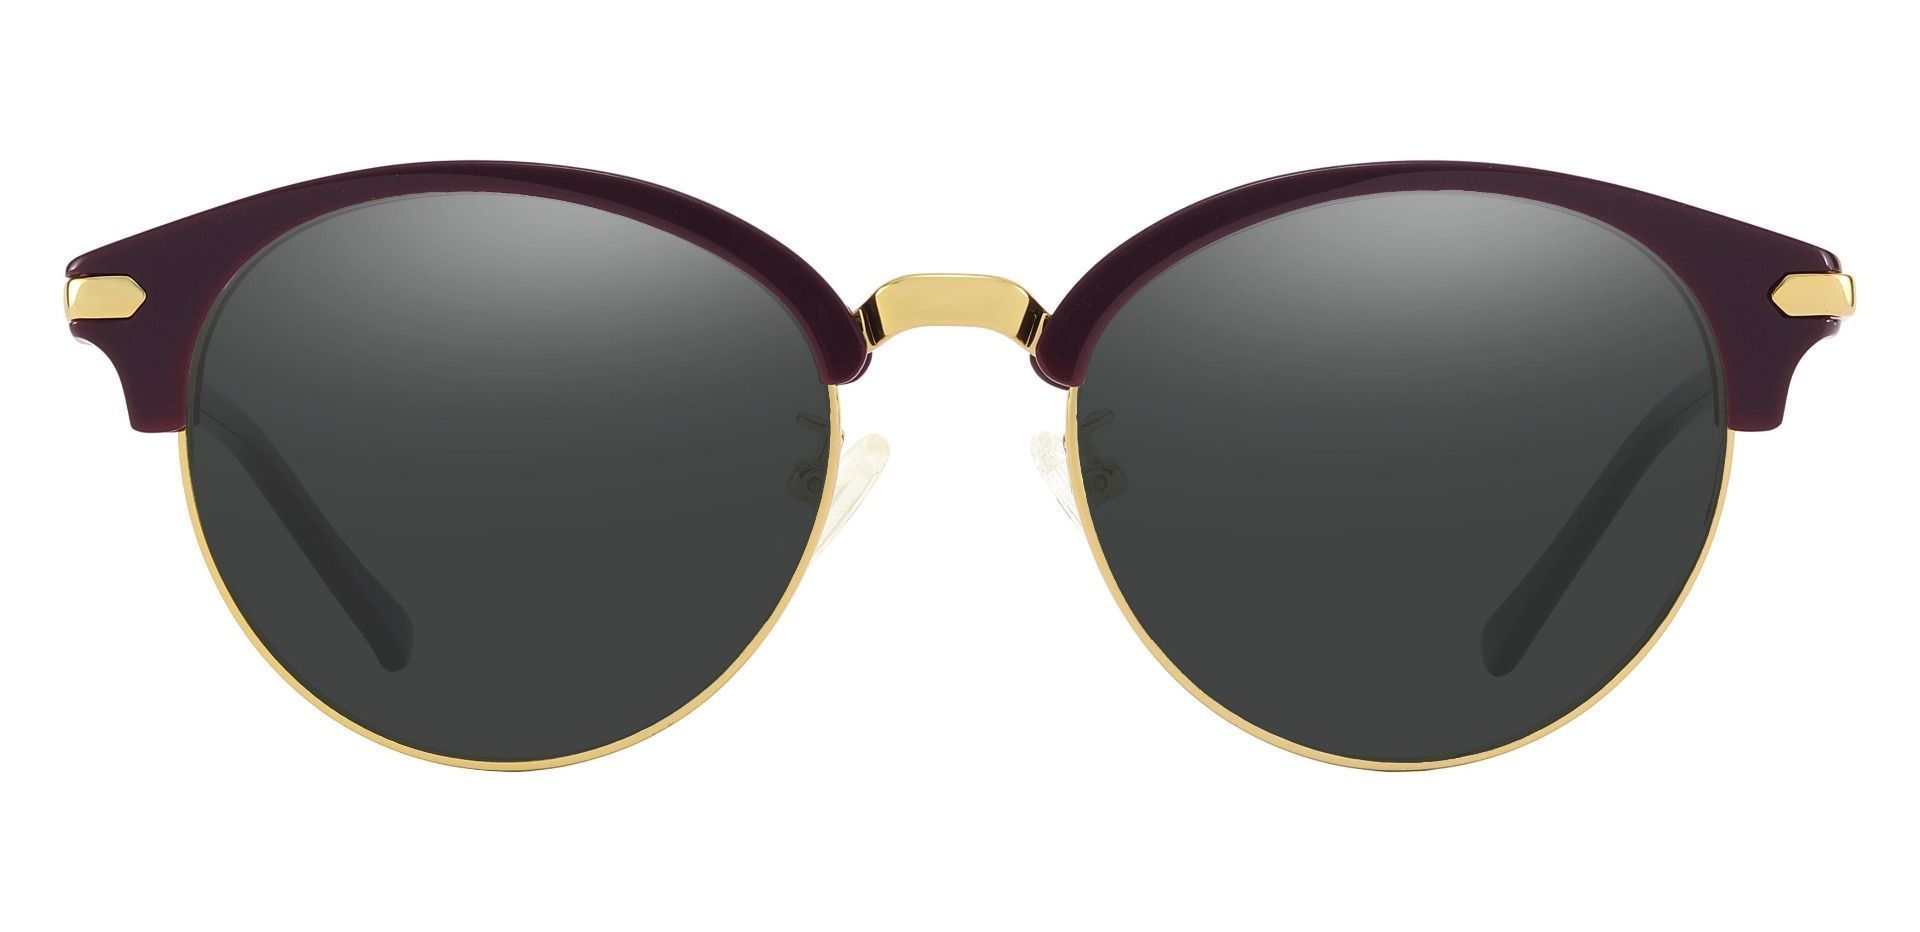 Catskill Browline Prescription Sunglasses - Purple Frame With Gray Lenses